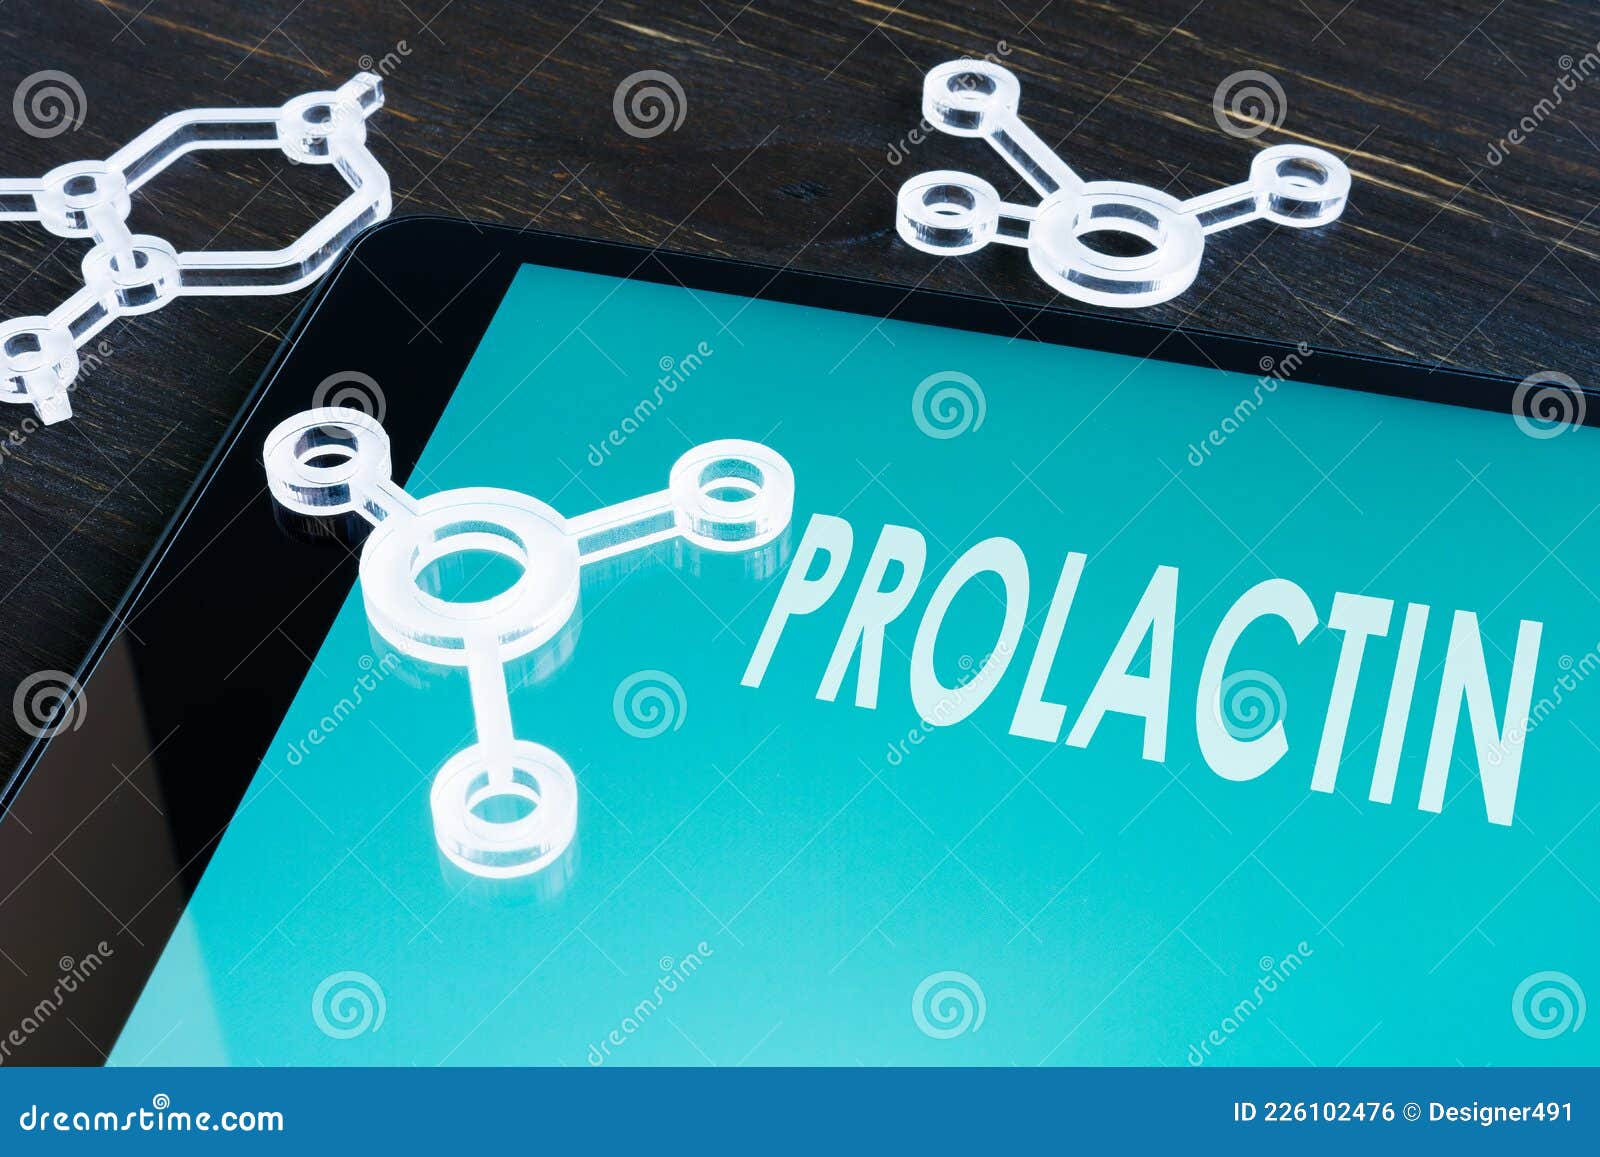 prolactin hormone prl on the screen and moleculas.